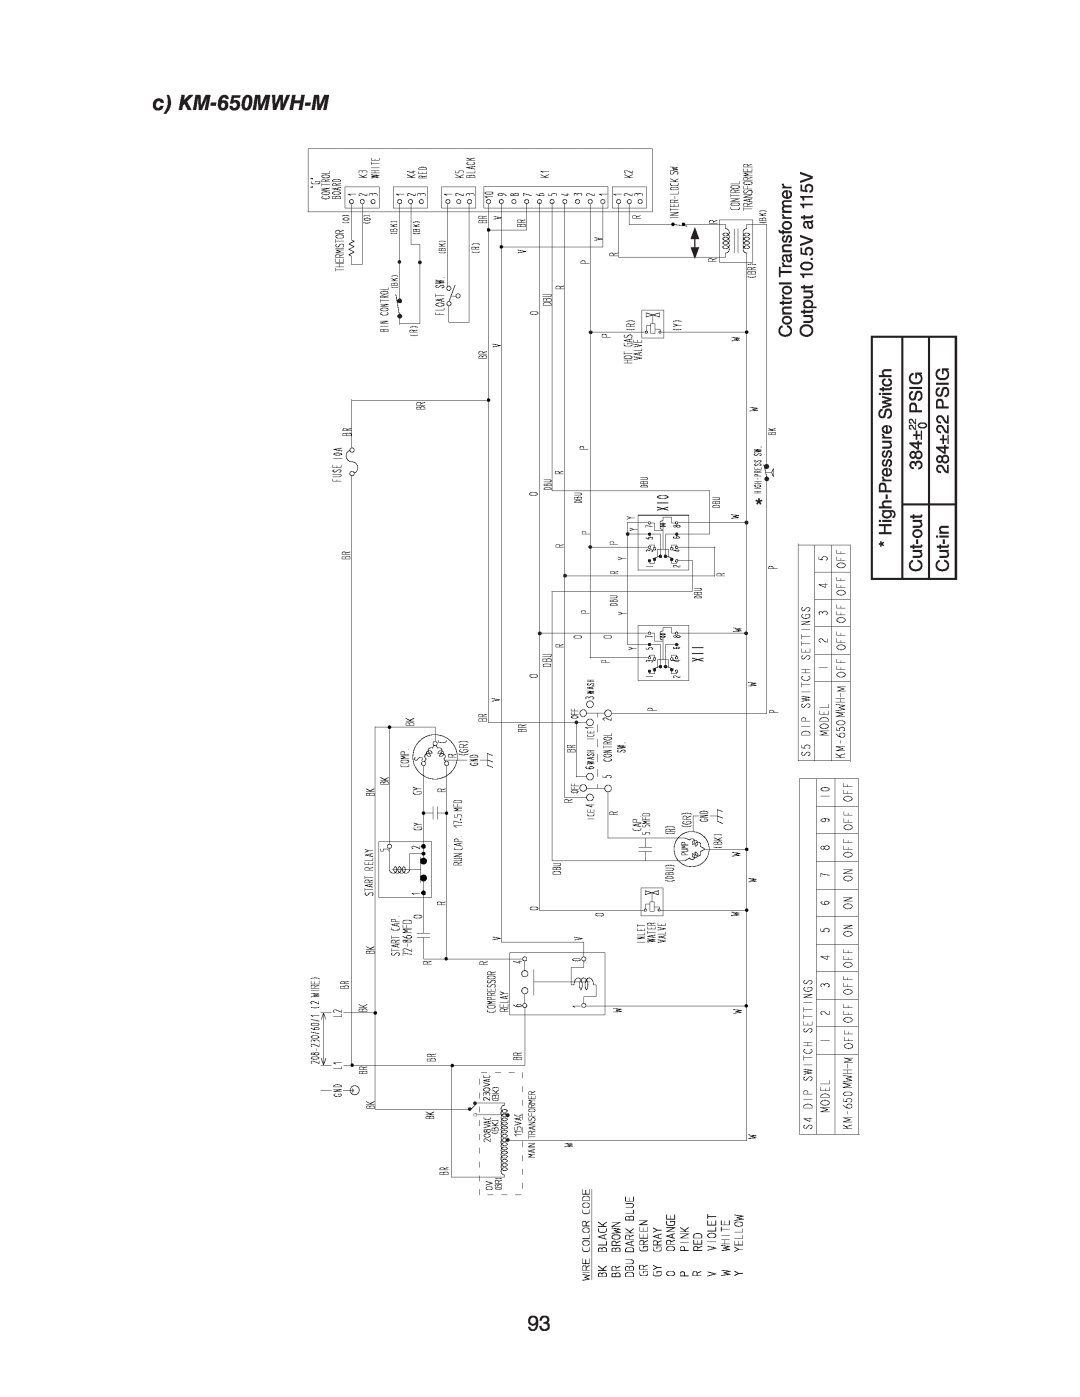 Hoshizaki MRH/3 c KM-650MWH-M, Control Transformer Output 10.5V at High-Pressure Switch, Cut-out, 384±, Psig, Cut-in 